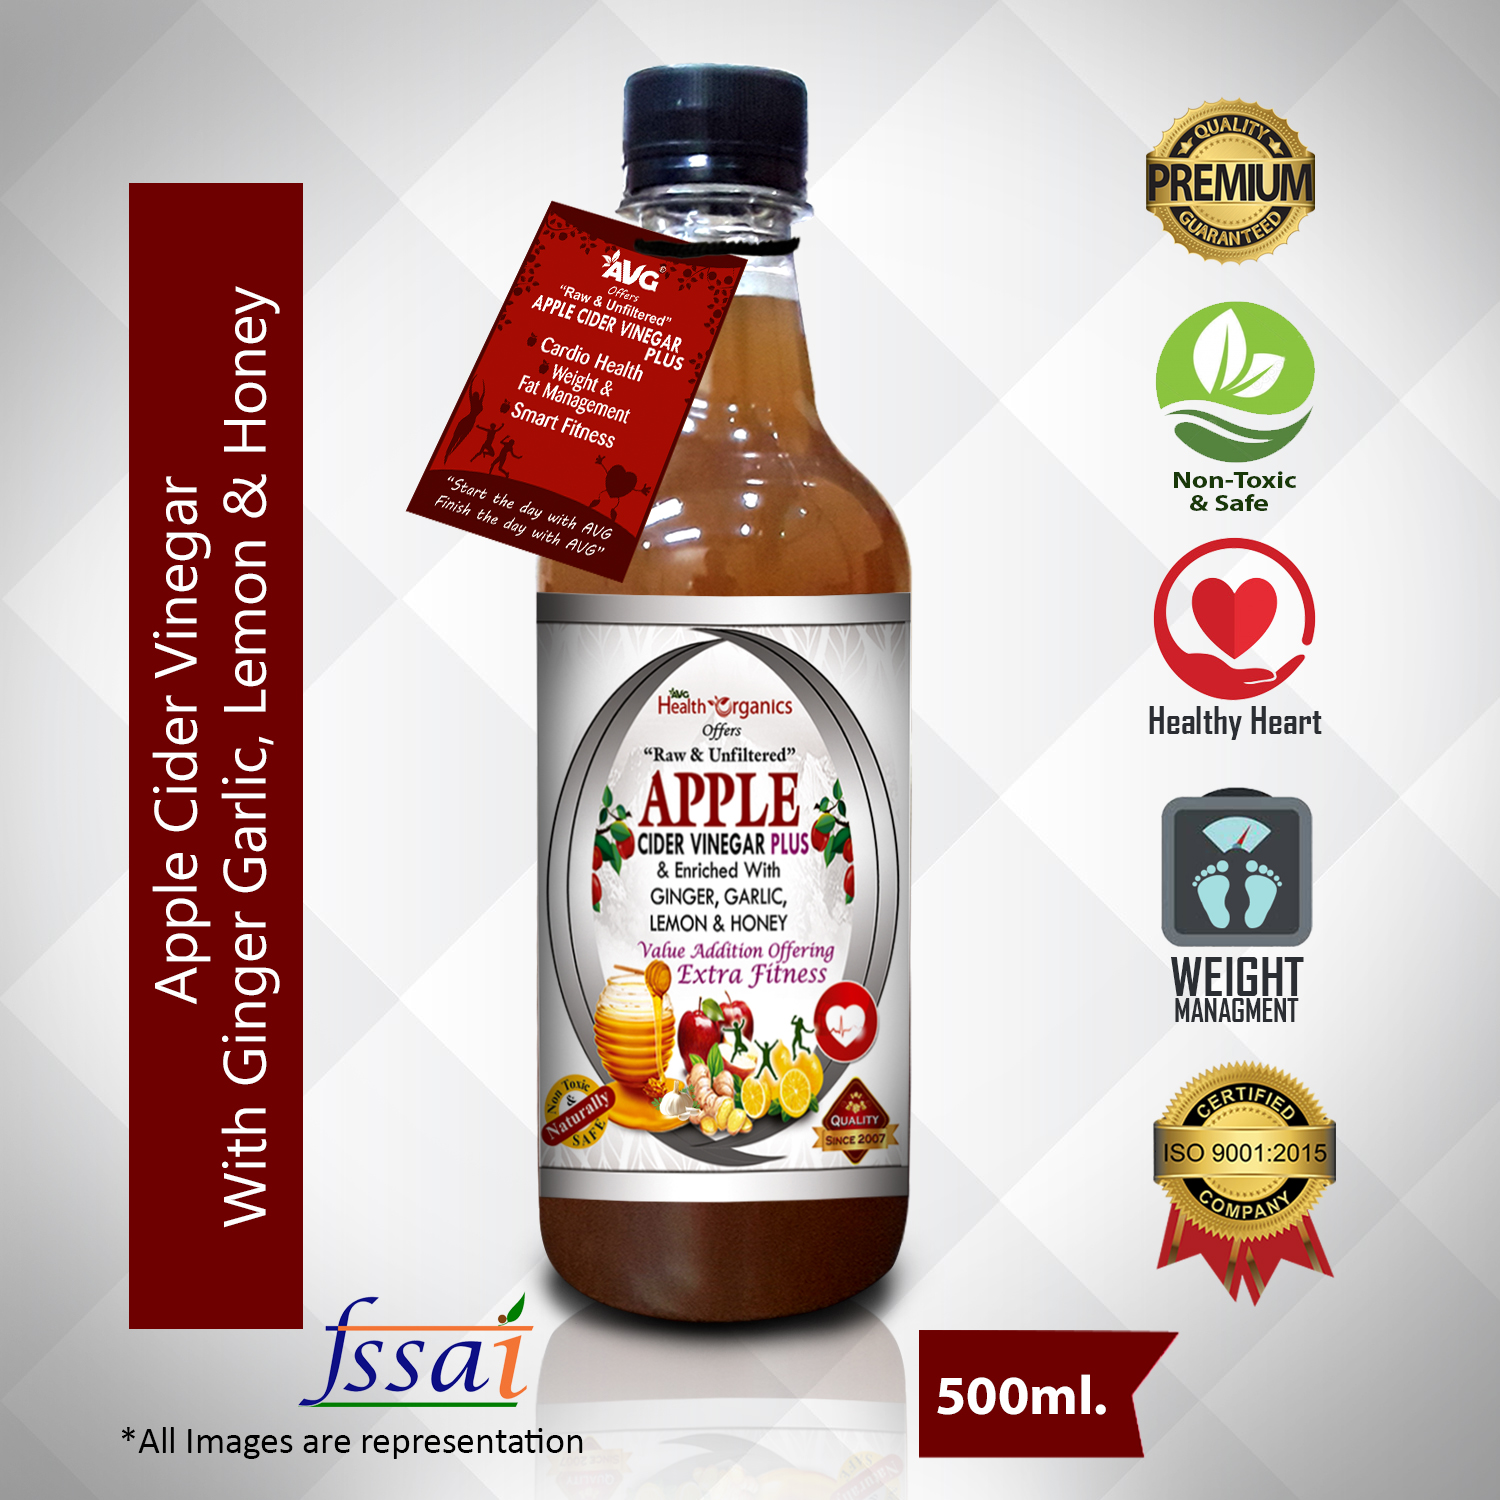 AVG Health Organics Apple Cider Vinegar Plus with Ginger, Garlic, Lemon & Honey